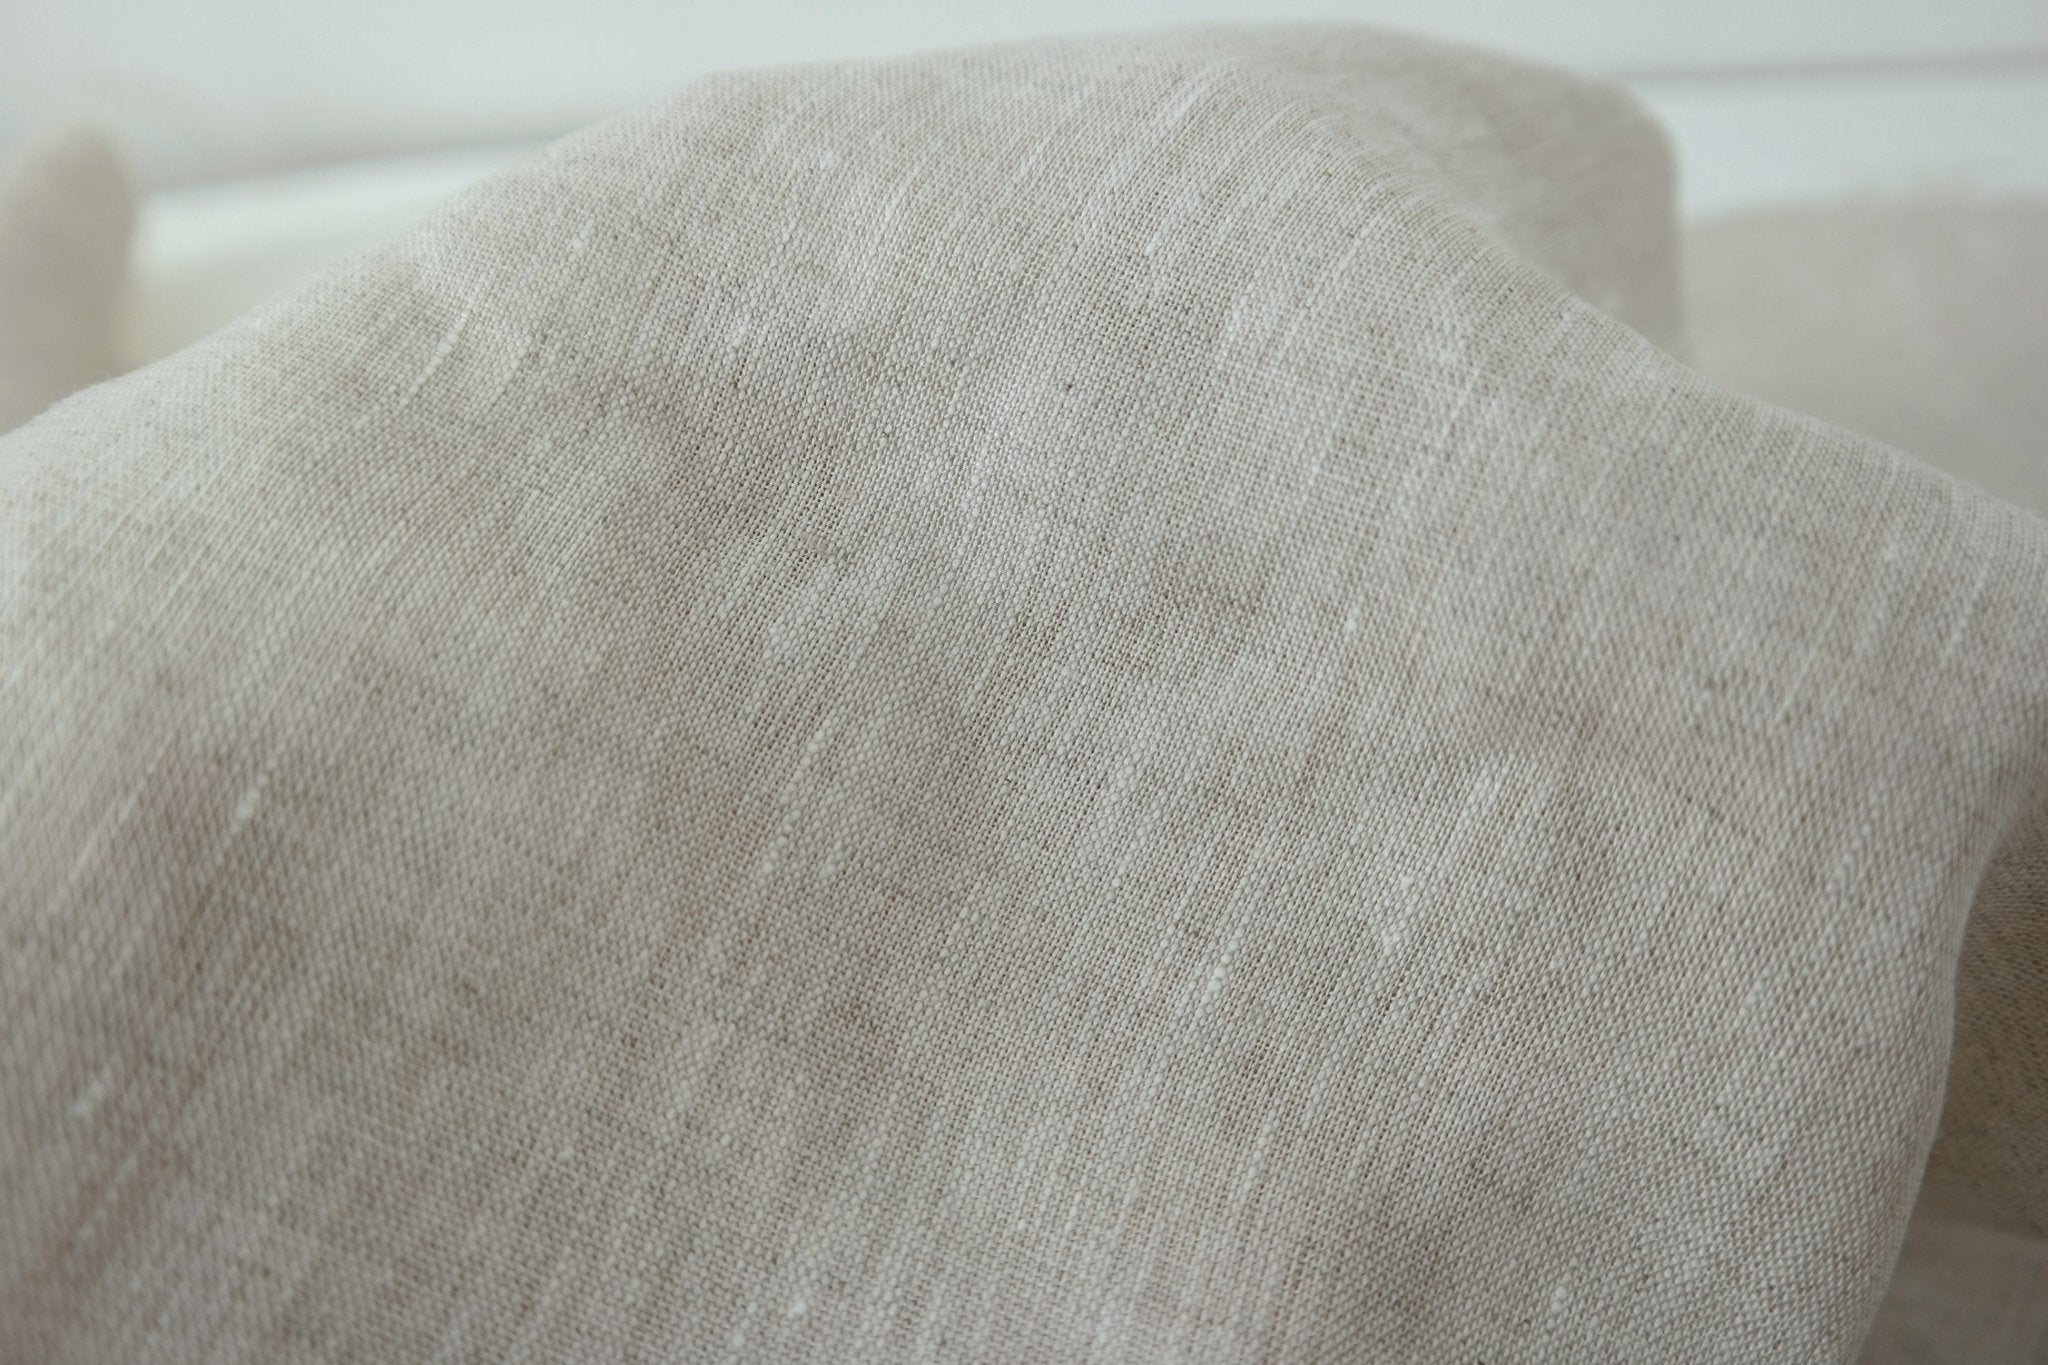 100% Linen Fabric Medium Weight Soft Touch 14S - The Linen Lab - Light natural